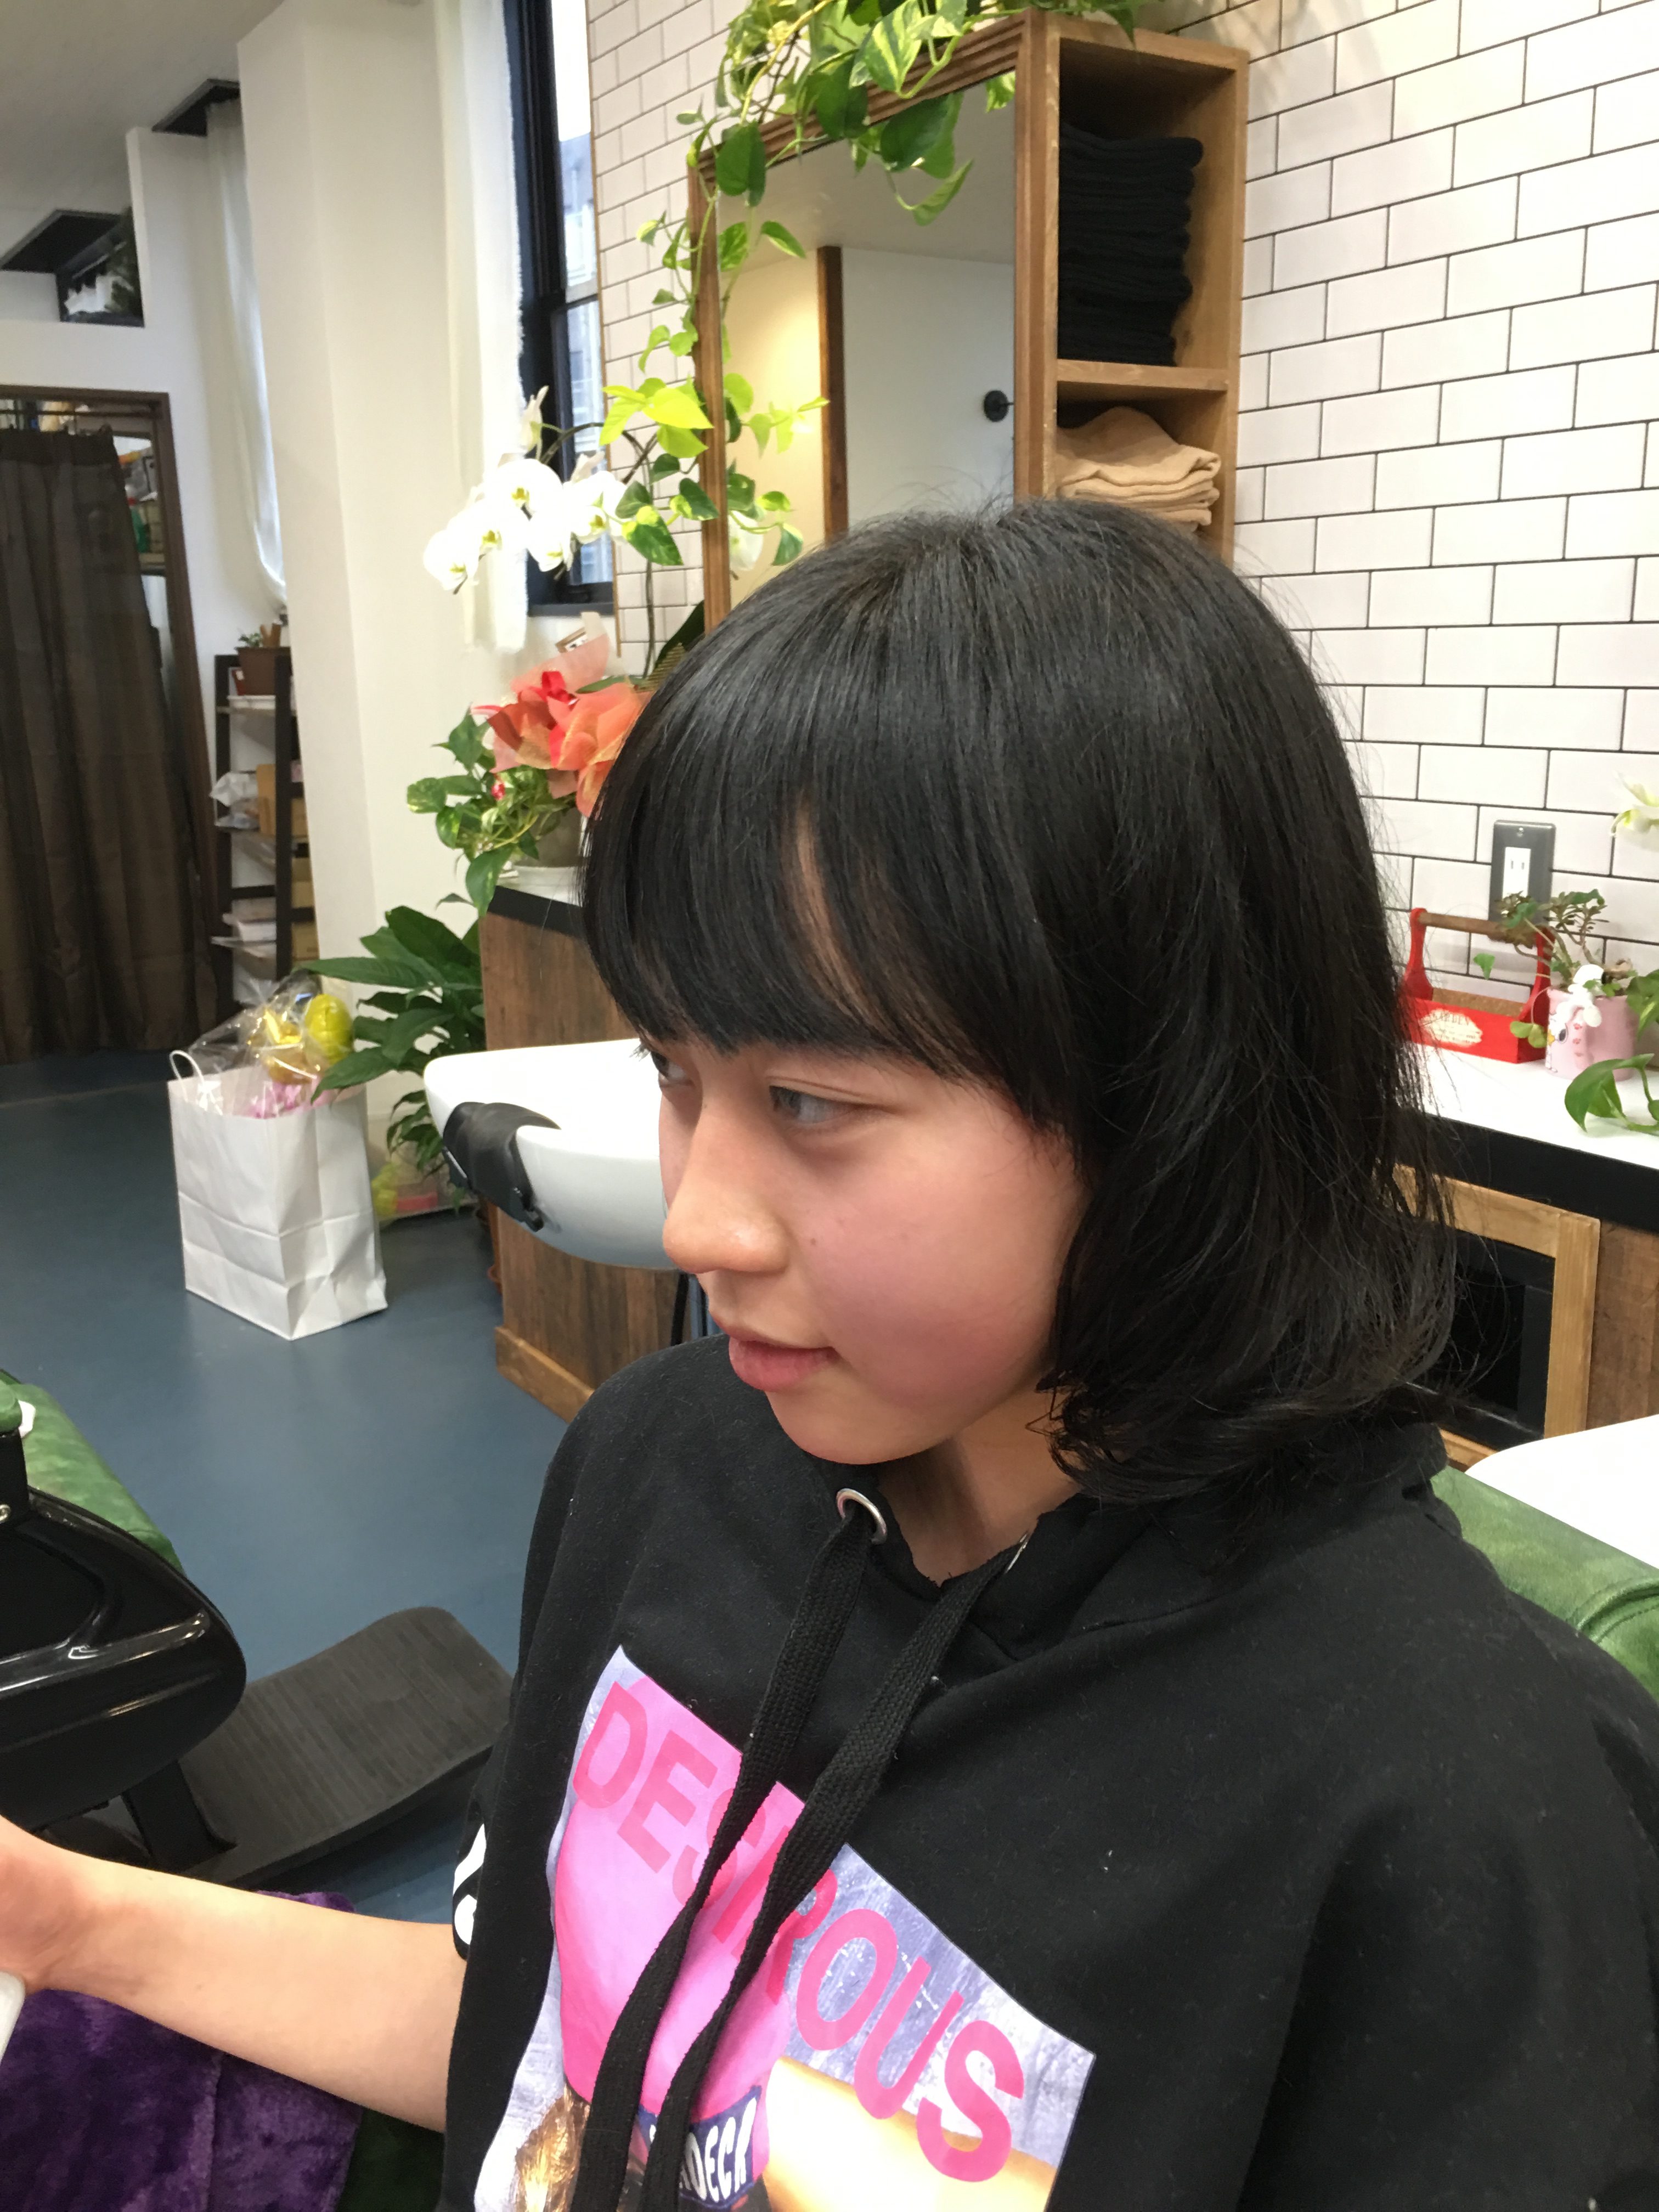 中学生女子 ロングから外ハネスタイル もともとのくせ毛をフル活用 ふぁしなとぅーる 堺市南区 Facinatulu ファシナトゥール